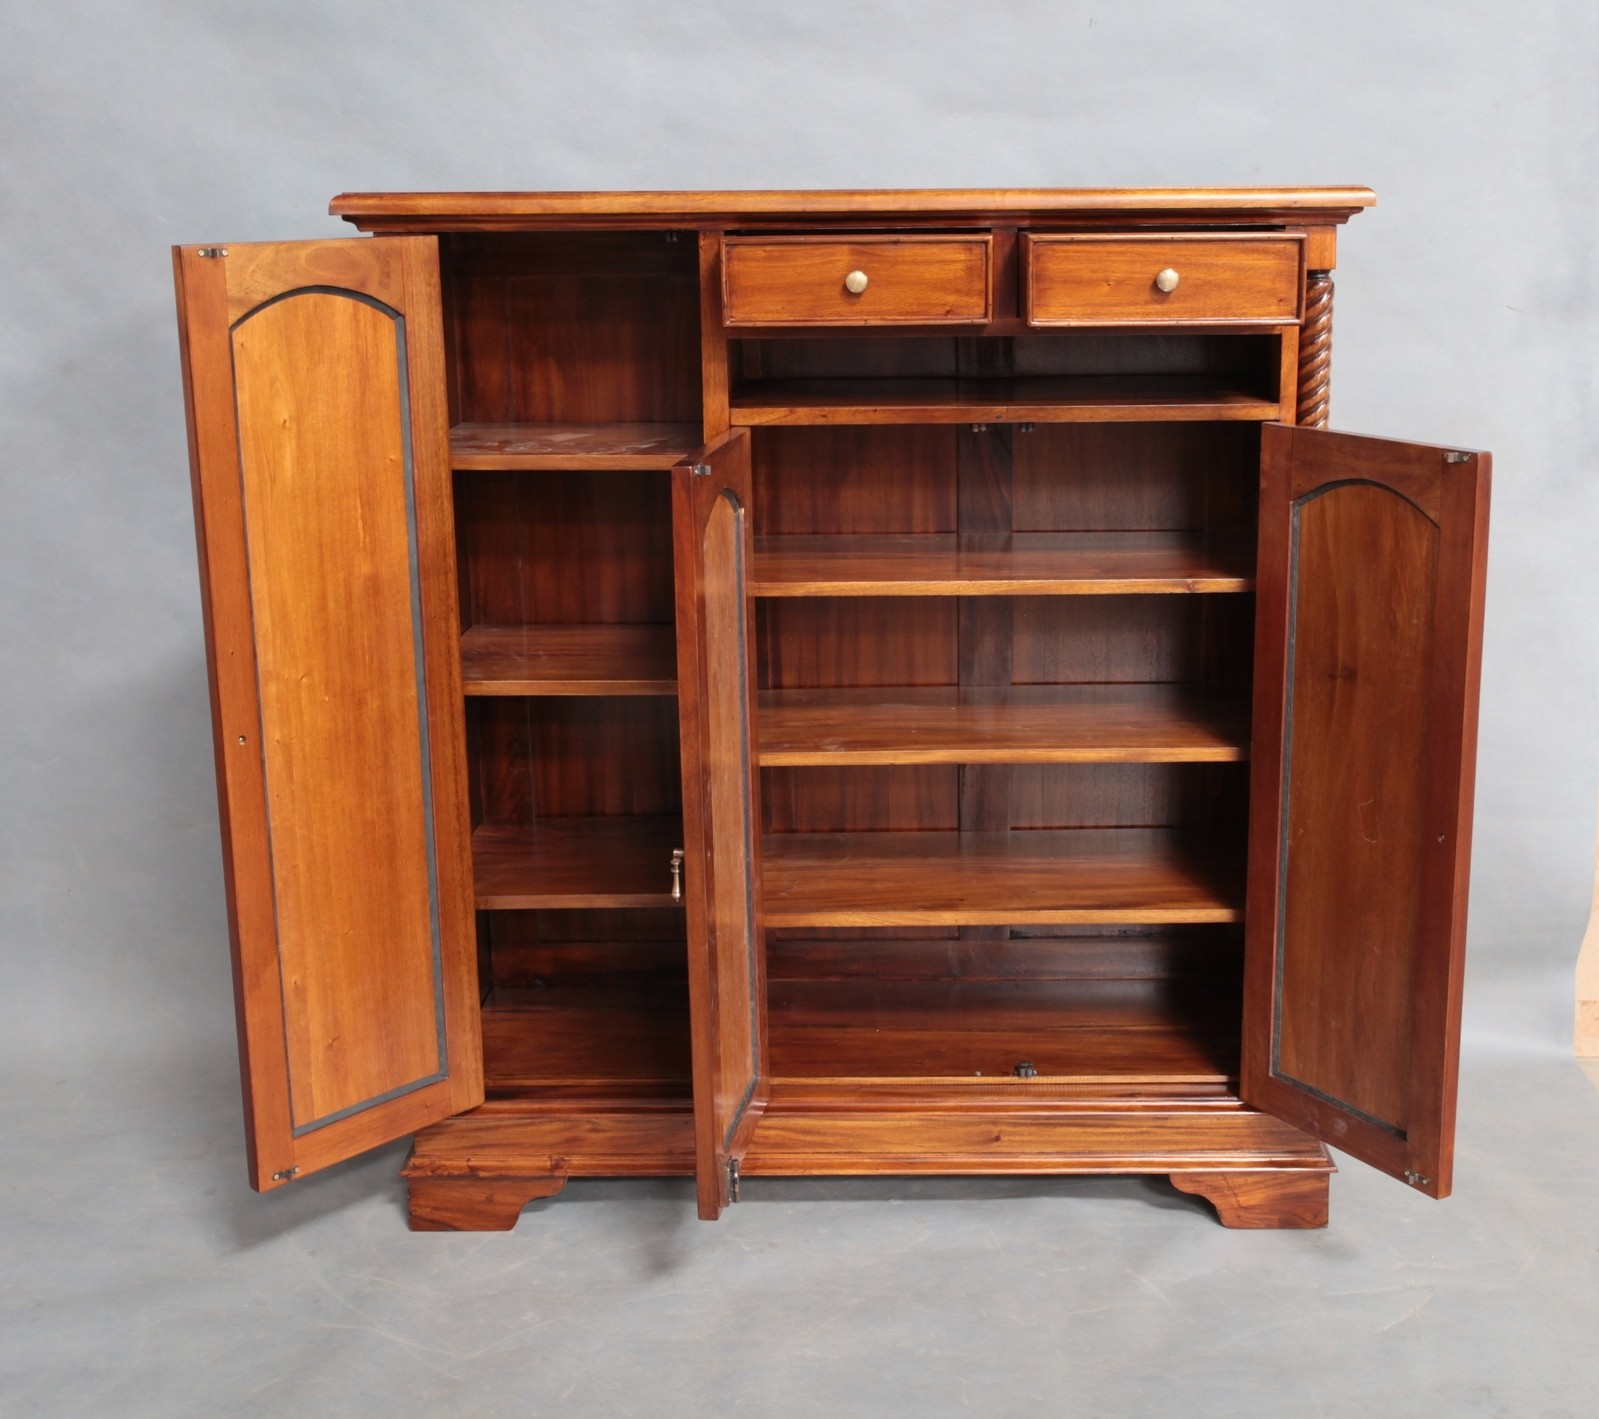 Mahogany wood large shoe cabinet with open shelf